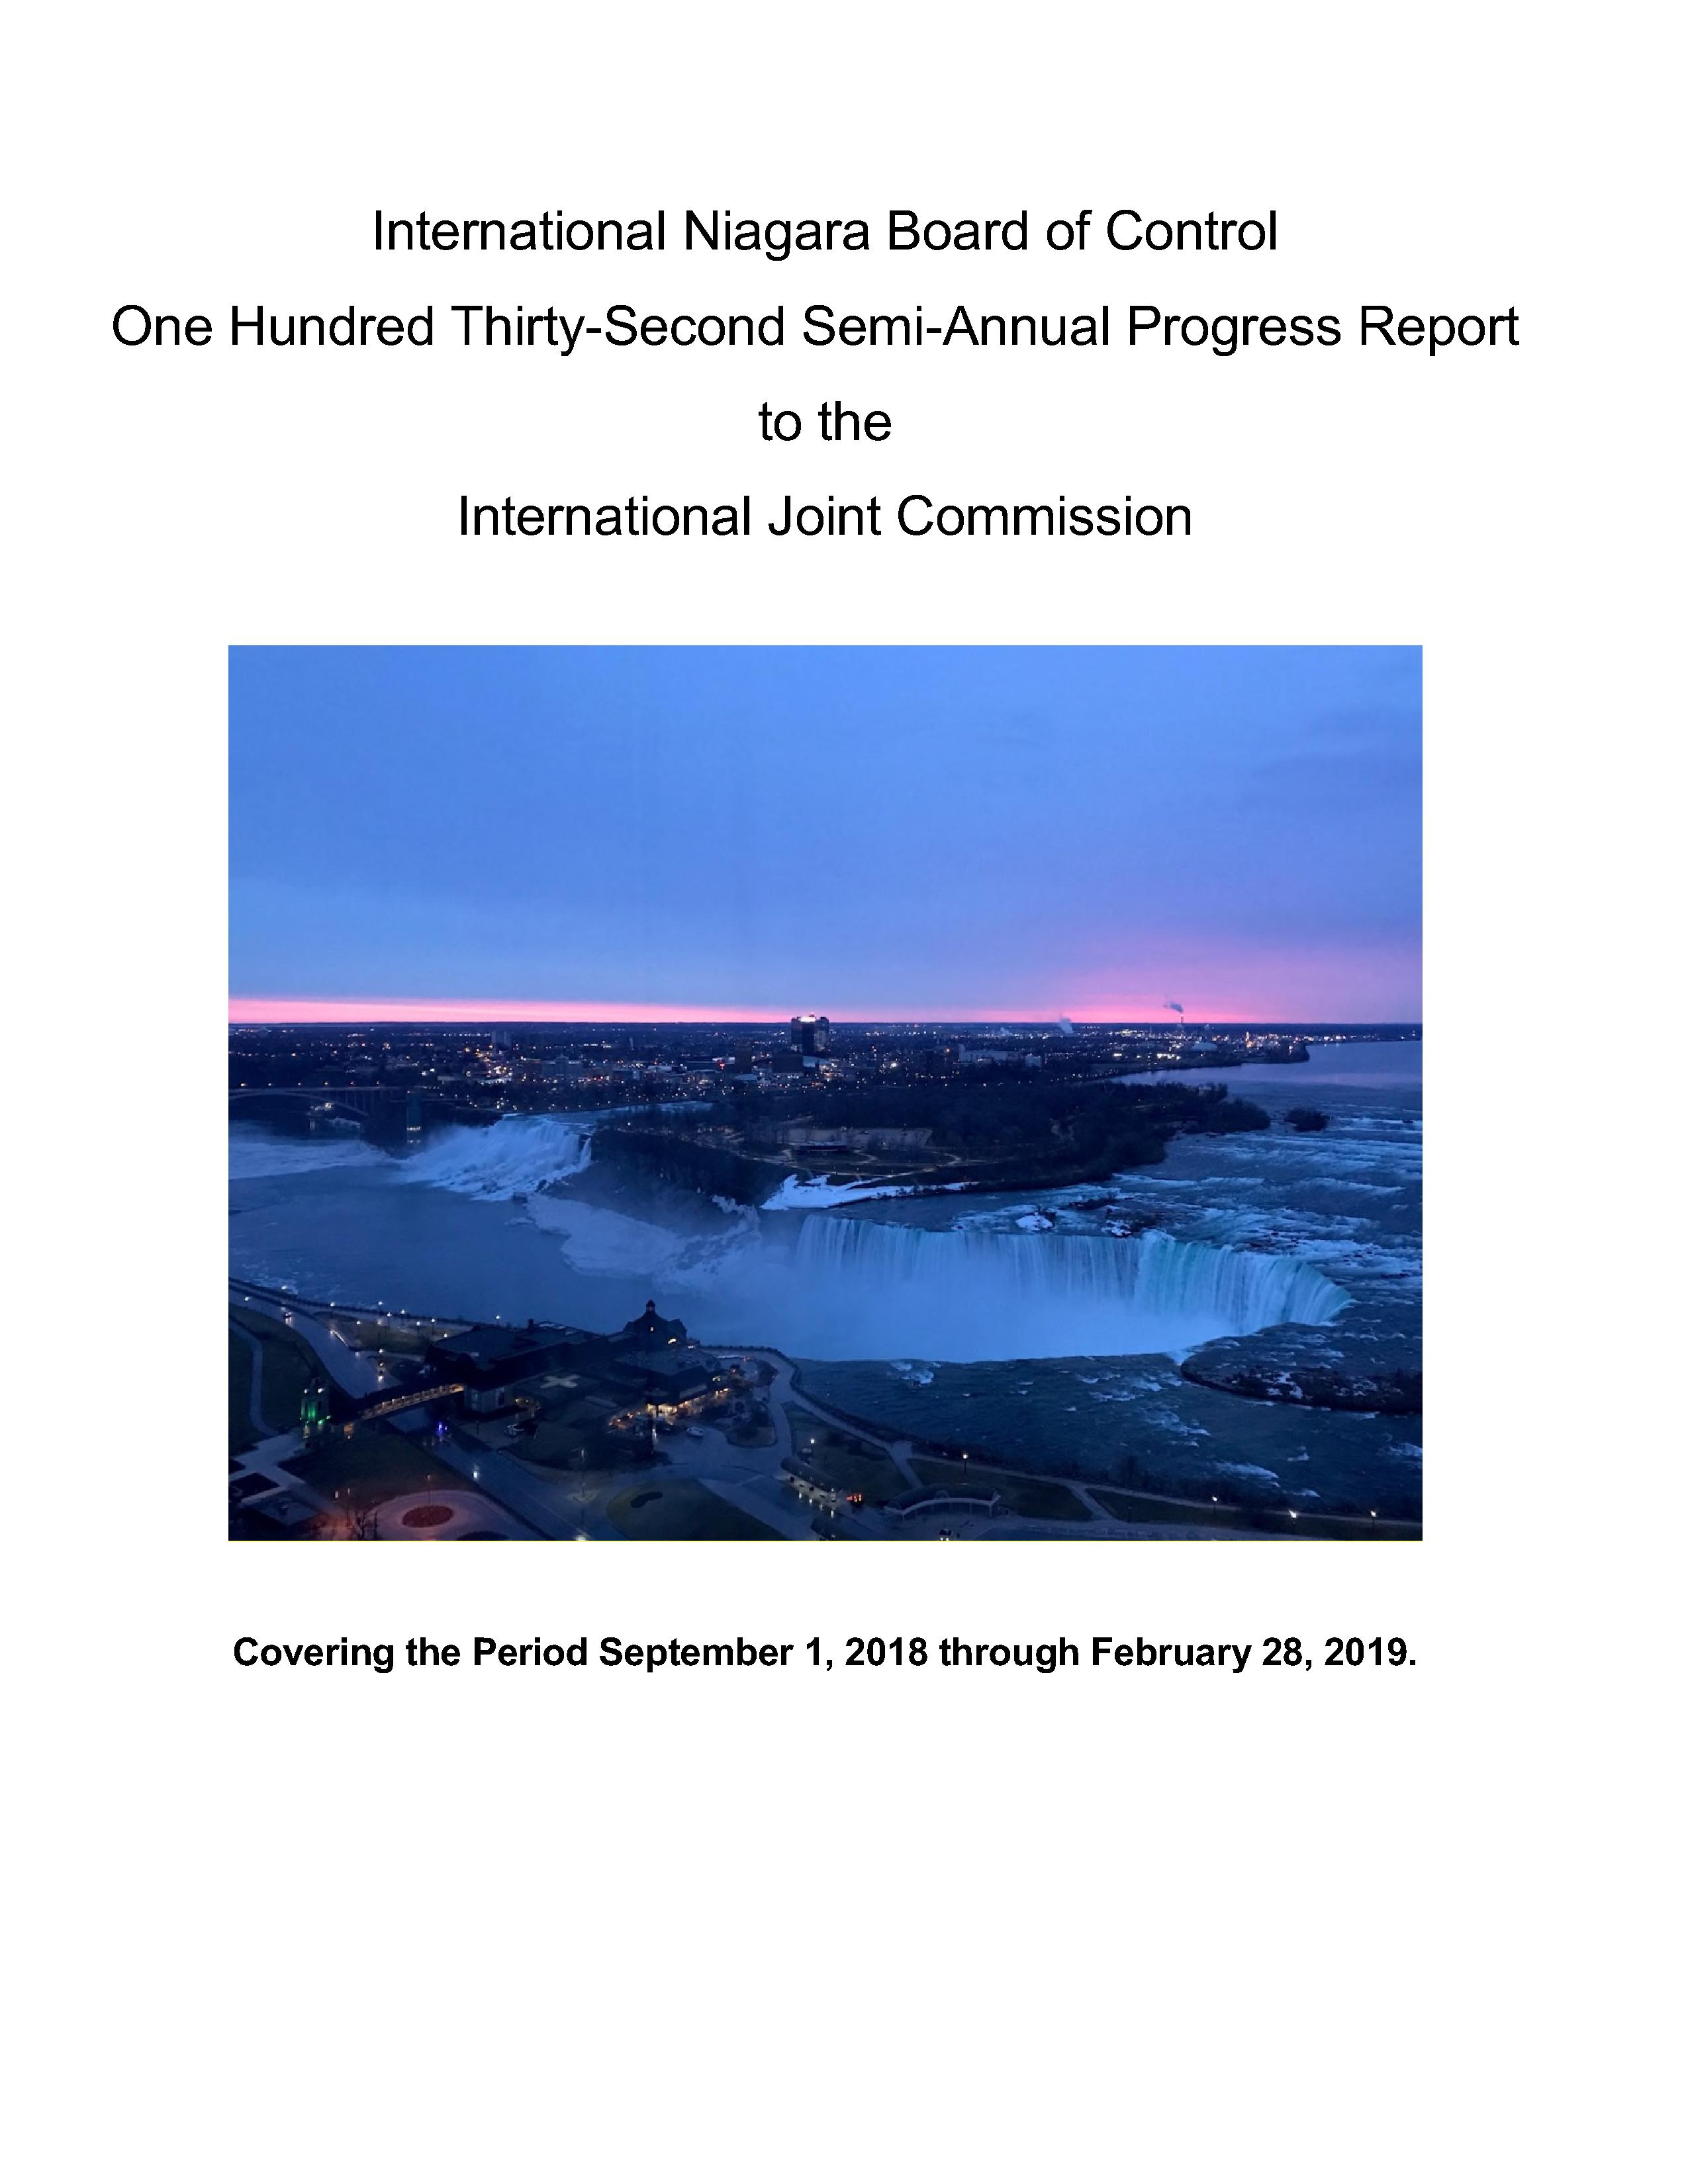 Cover page 132nd INBC Semi-Annual Progress Report